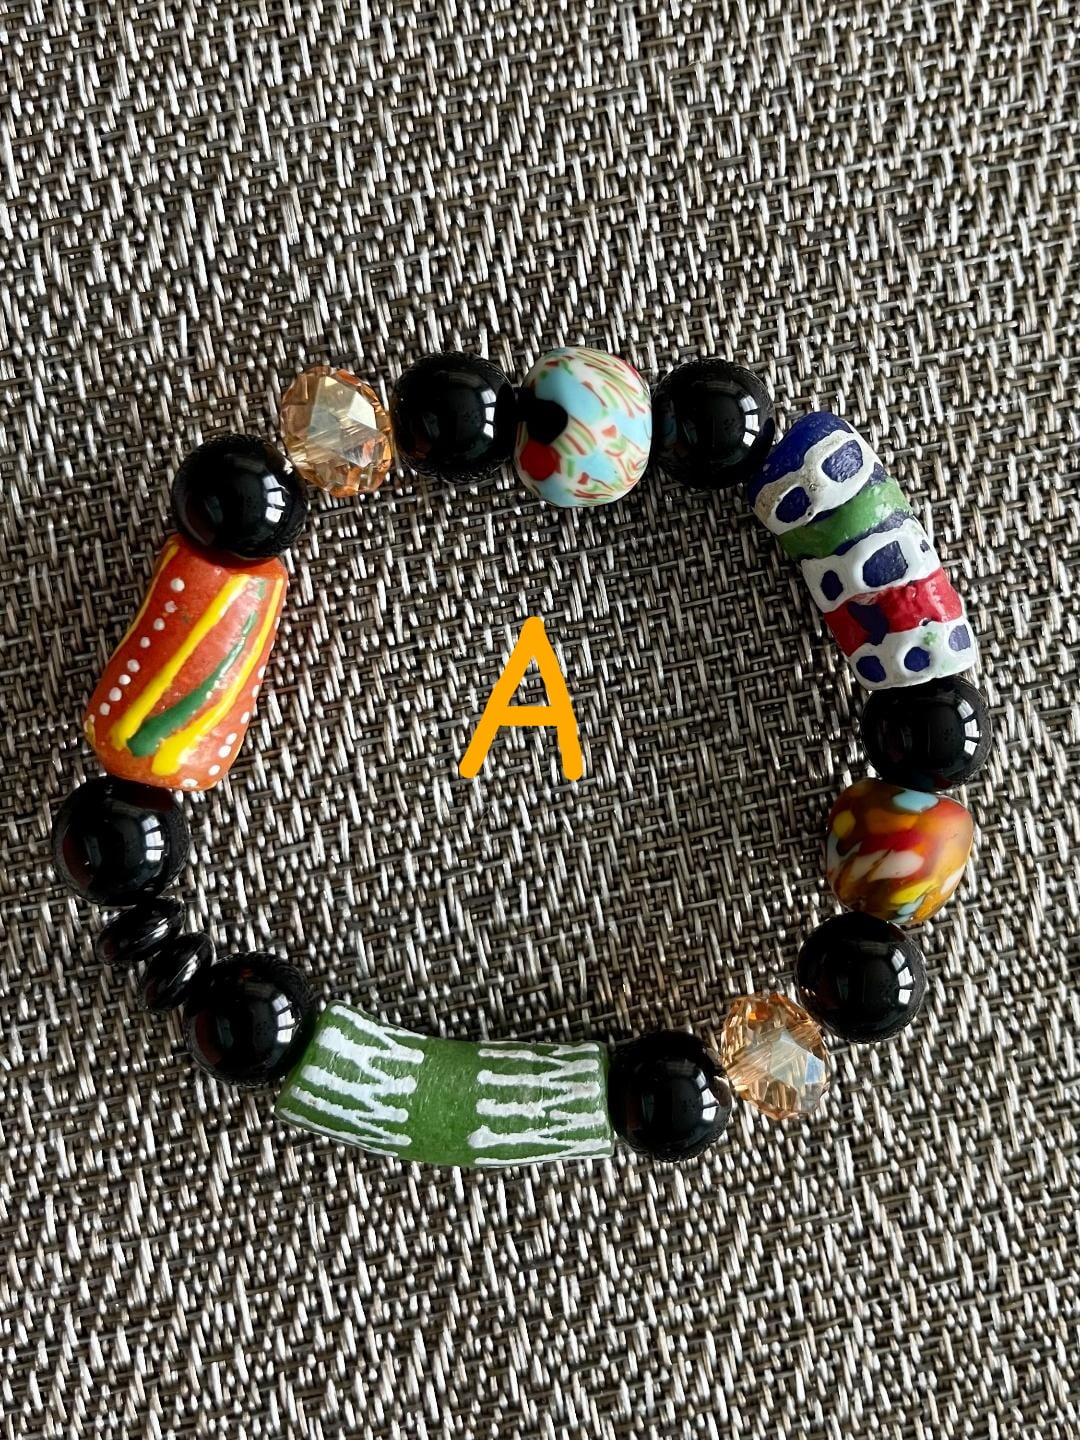 Willstar 3600Pcs Bracelet Making Sets Color Ocean Series Beads To Make Bracelets  Letters For Adult Child US 